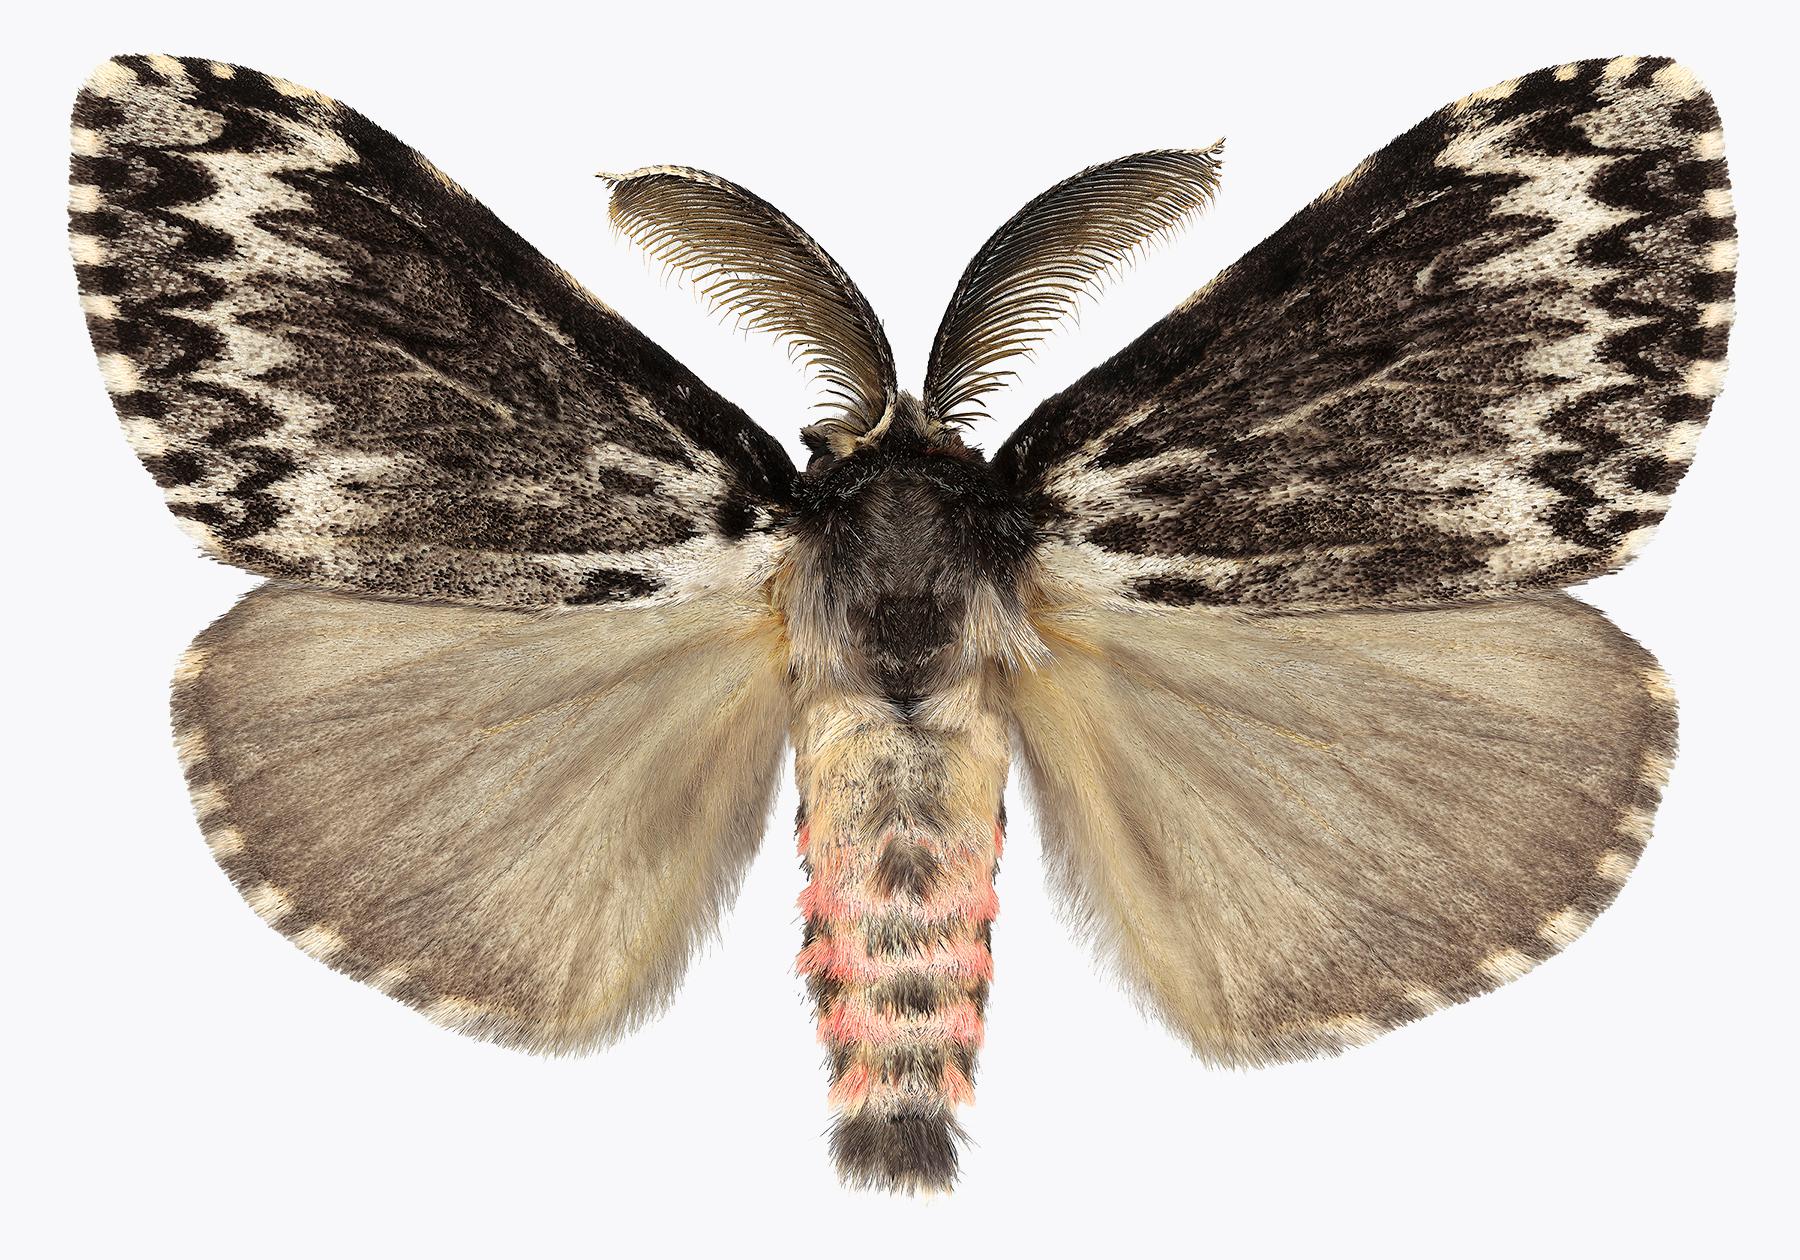 Joseph Scheer Color Photograph – Lymantria-Exemplare, Naturfotografie mit rosa und braunem Moth auf weiem Hintergrund